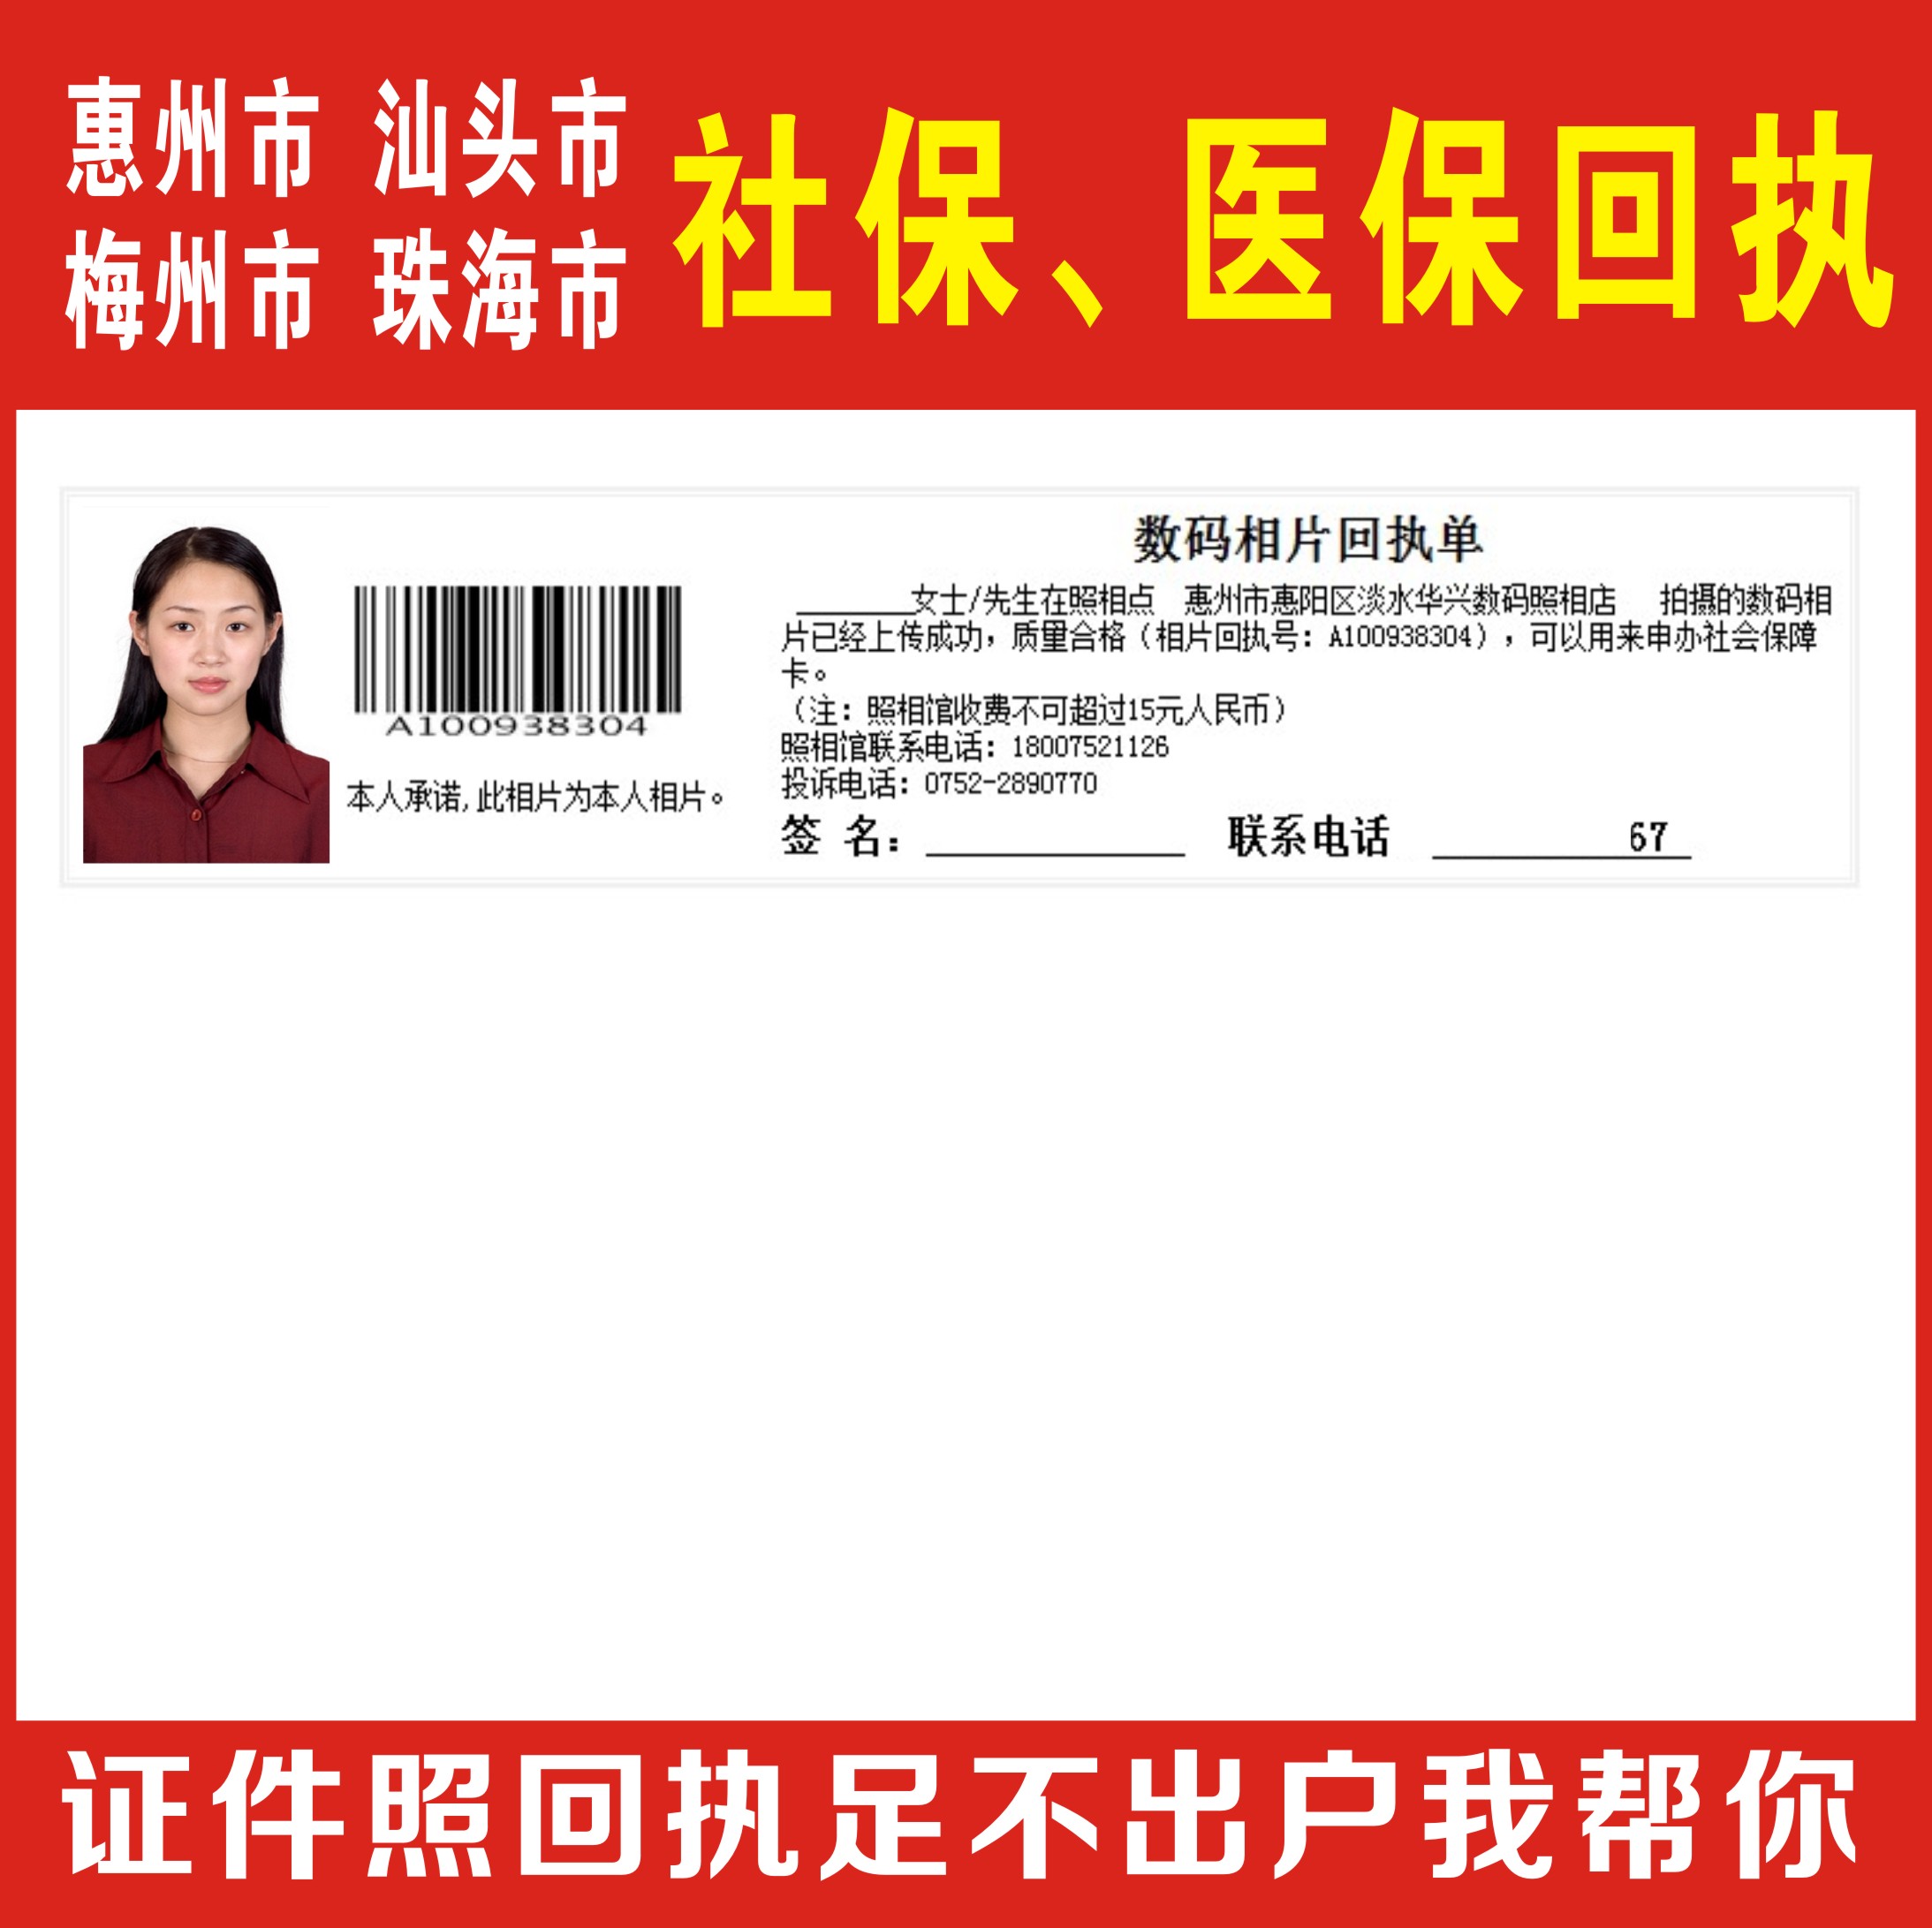 证件照数码回执广东省/居住证/社保卡/身份证/驾驶证 数码相片